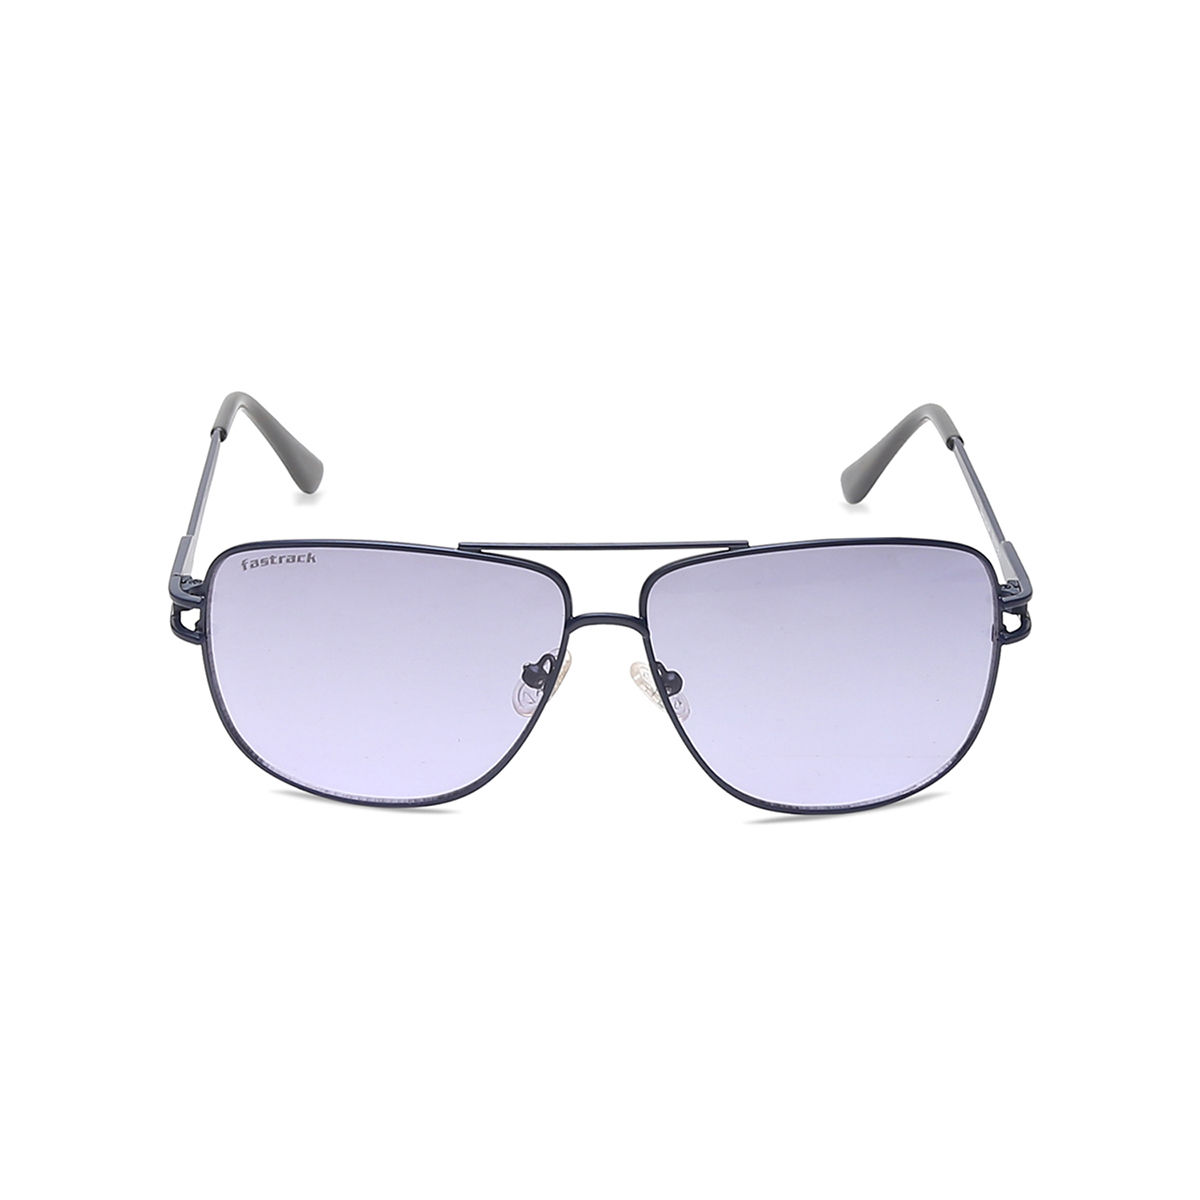 New Foster Grant Men's LGD Oscar Sunglasses - Walmart.com